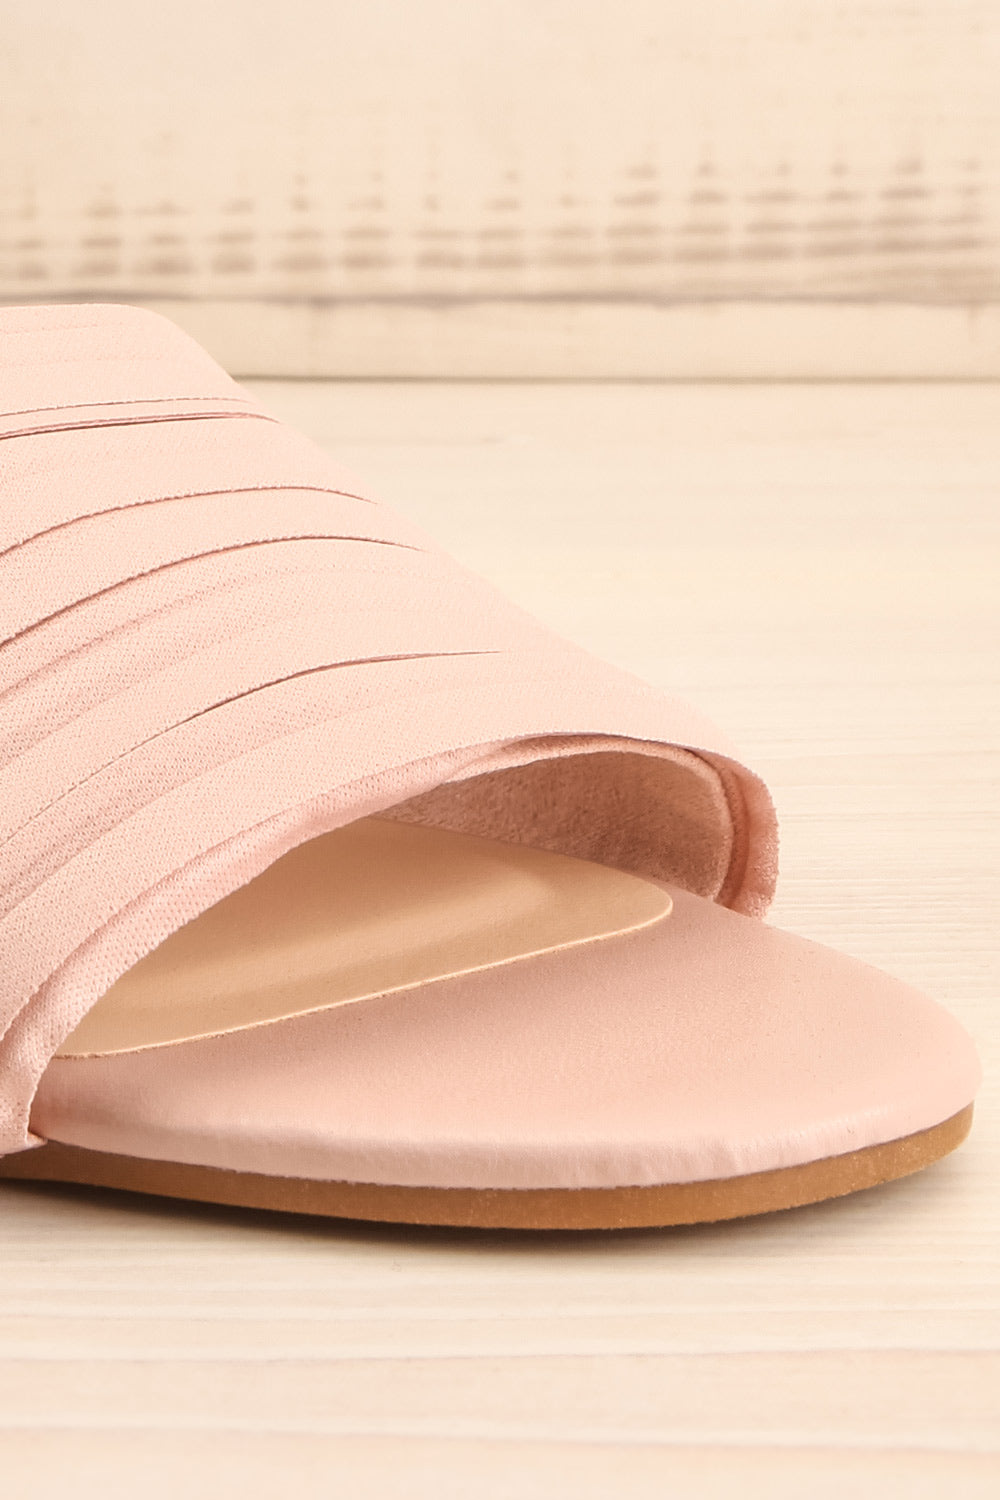 Mox Blush Pleated Slide Sandals | La petite garçonne front close-up